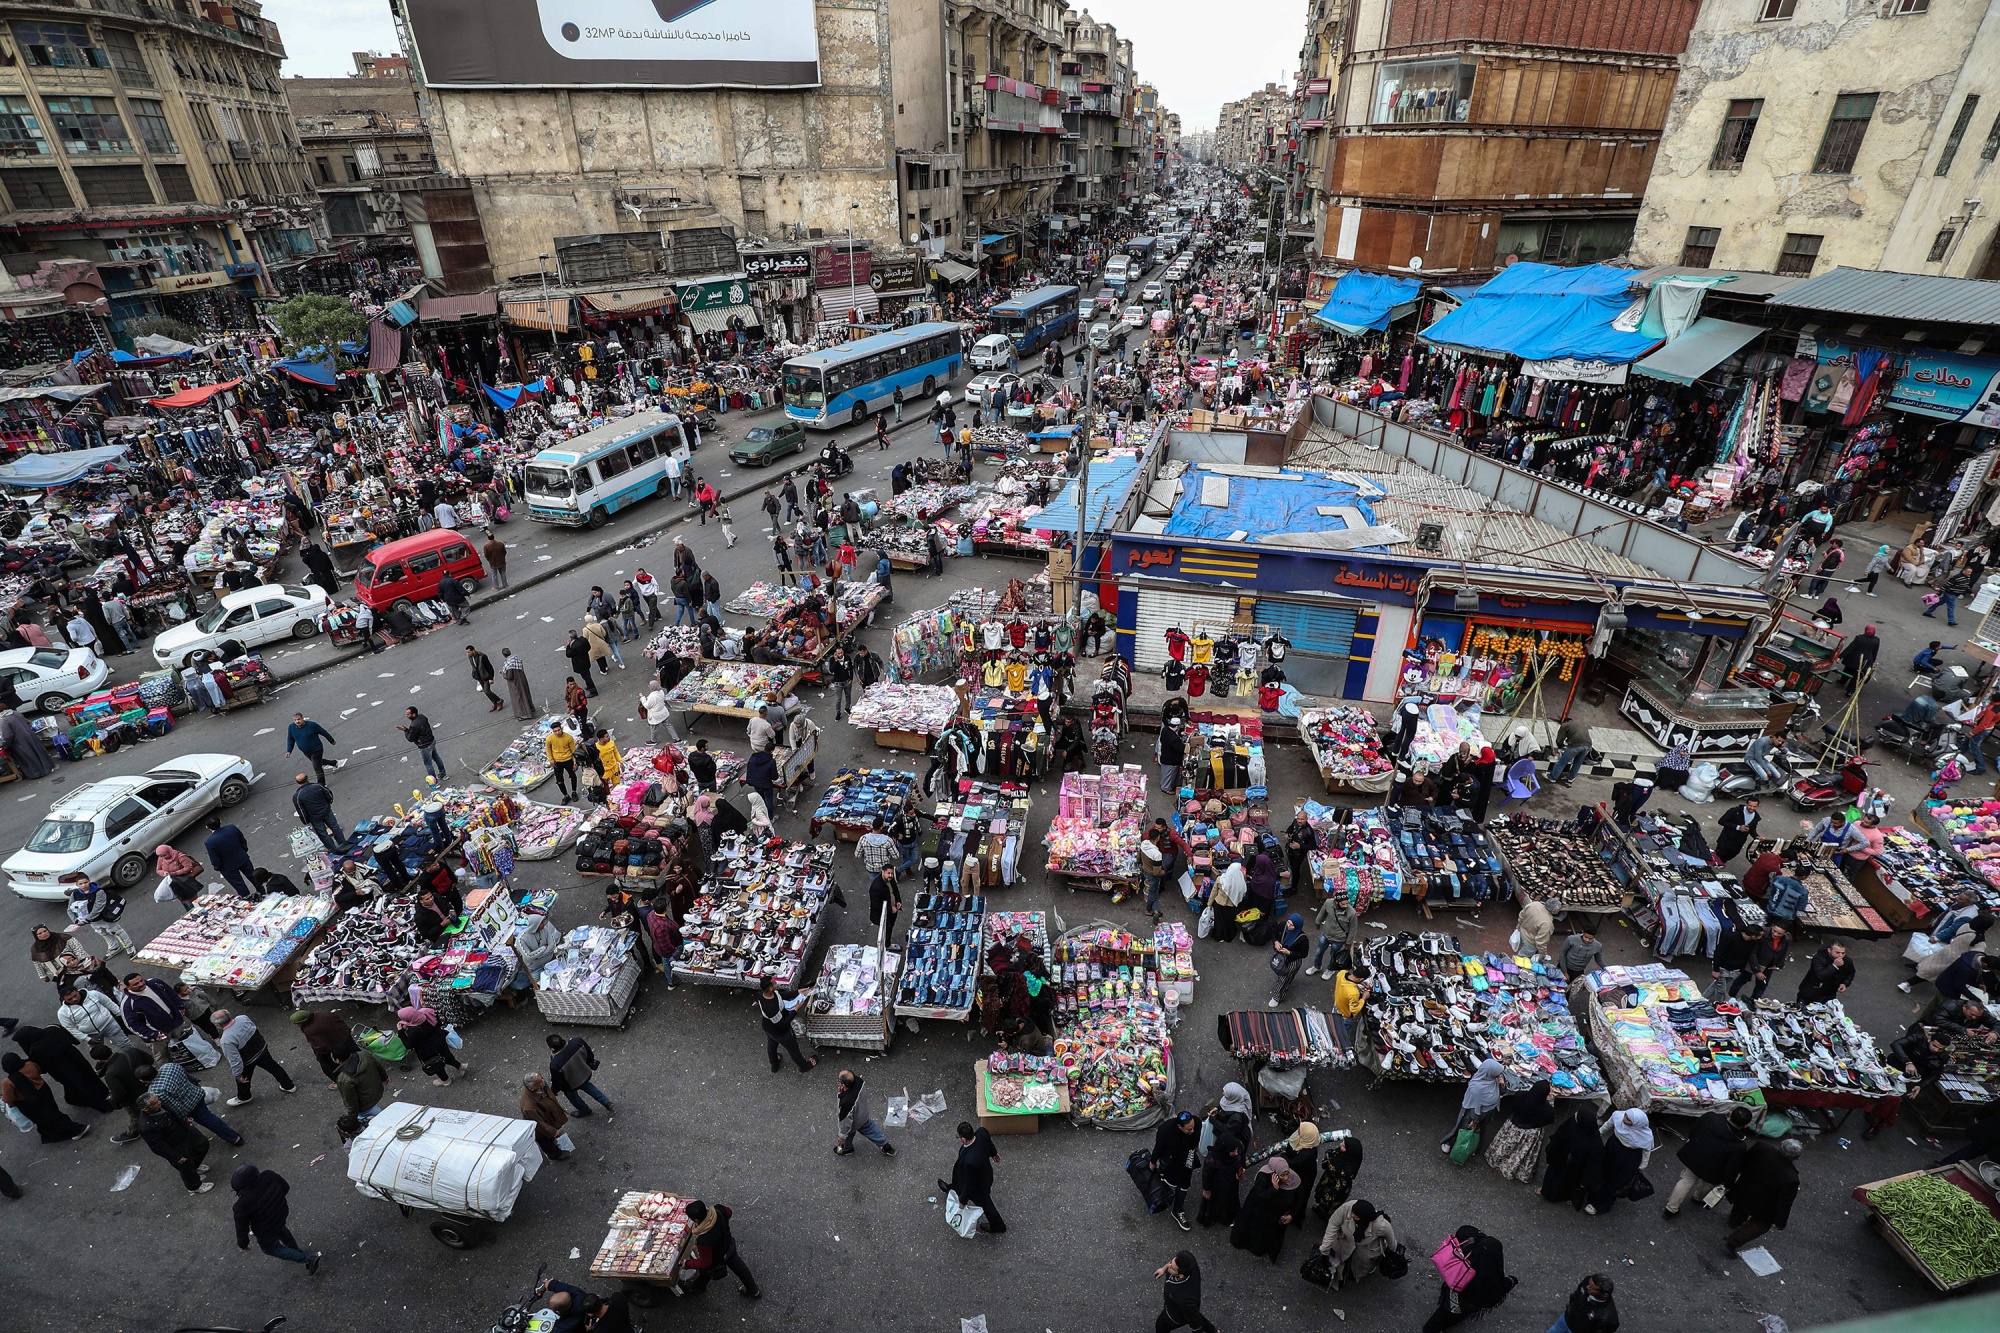 Pedestrians attend a market in&nbsp;Cairo.&nbsp;